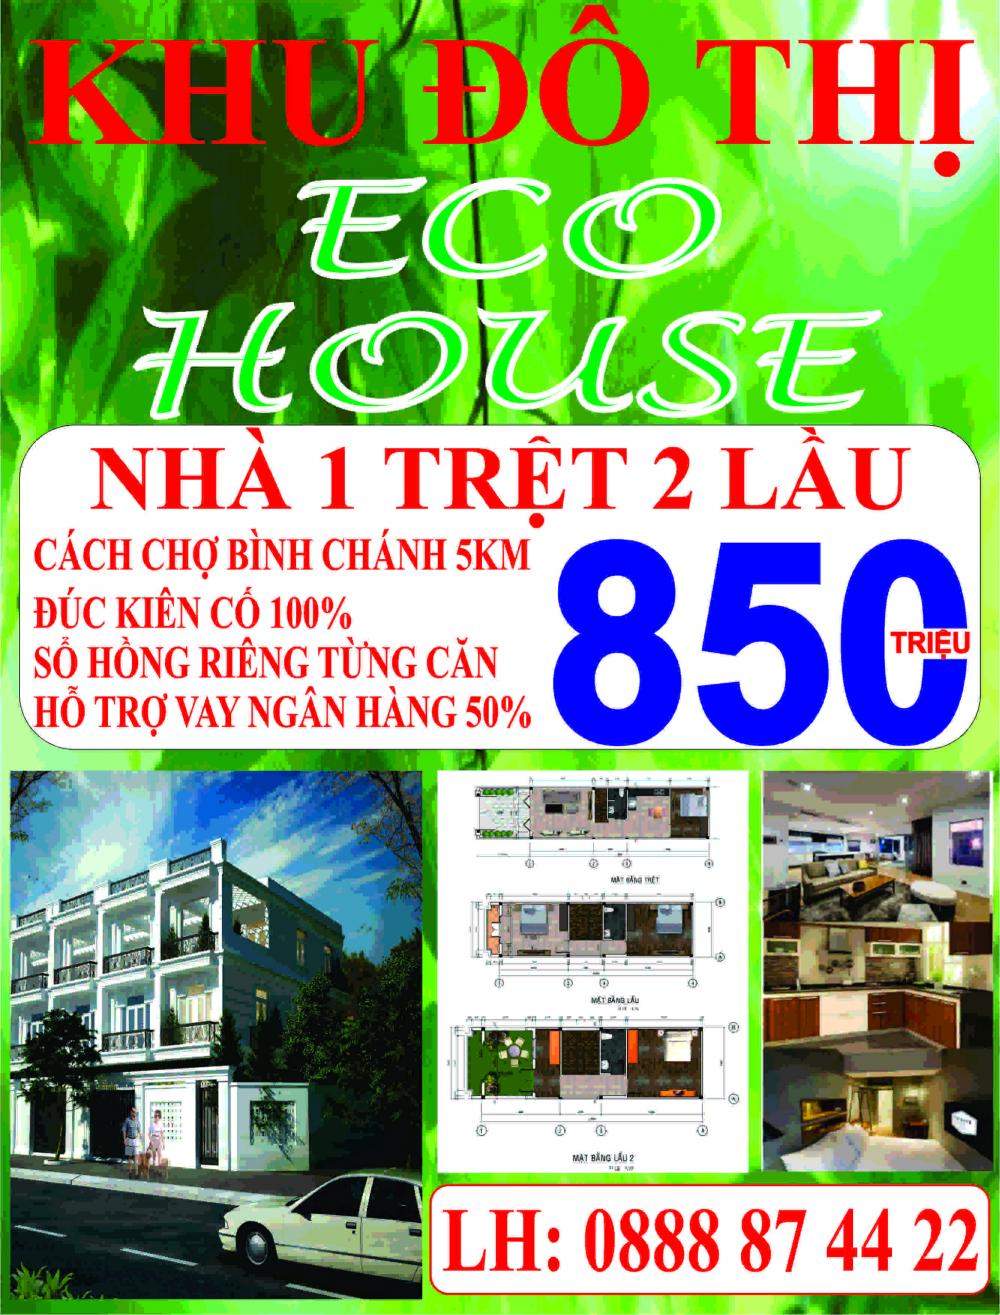 Nhanh tay sở hữu căn nhà mơ ước KDT ECO HOUSE Bình Chánh chỉ với 850 triệu.